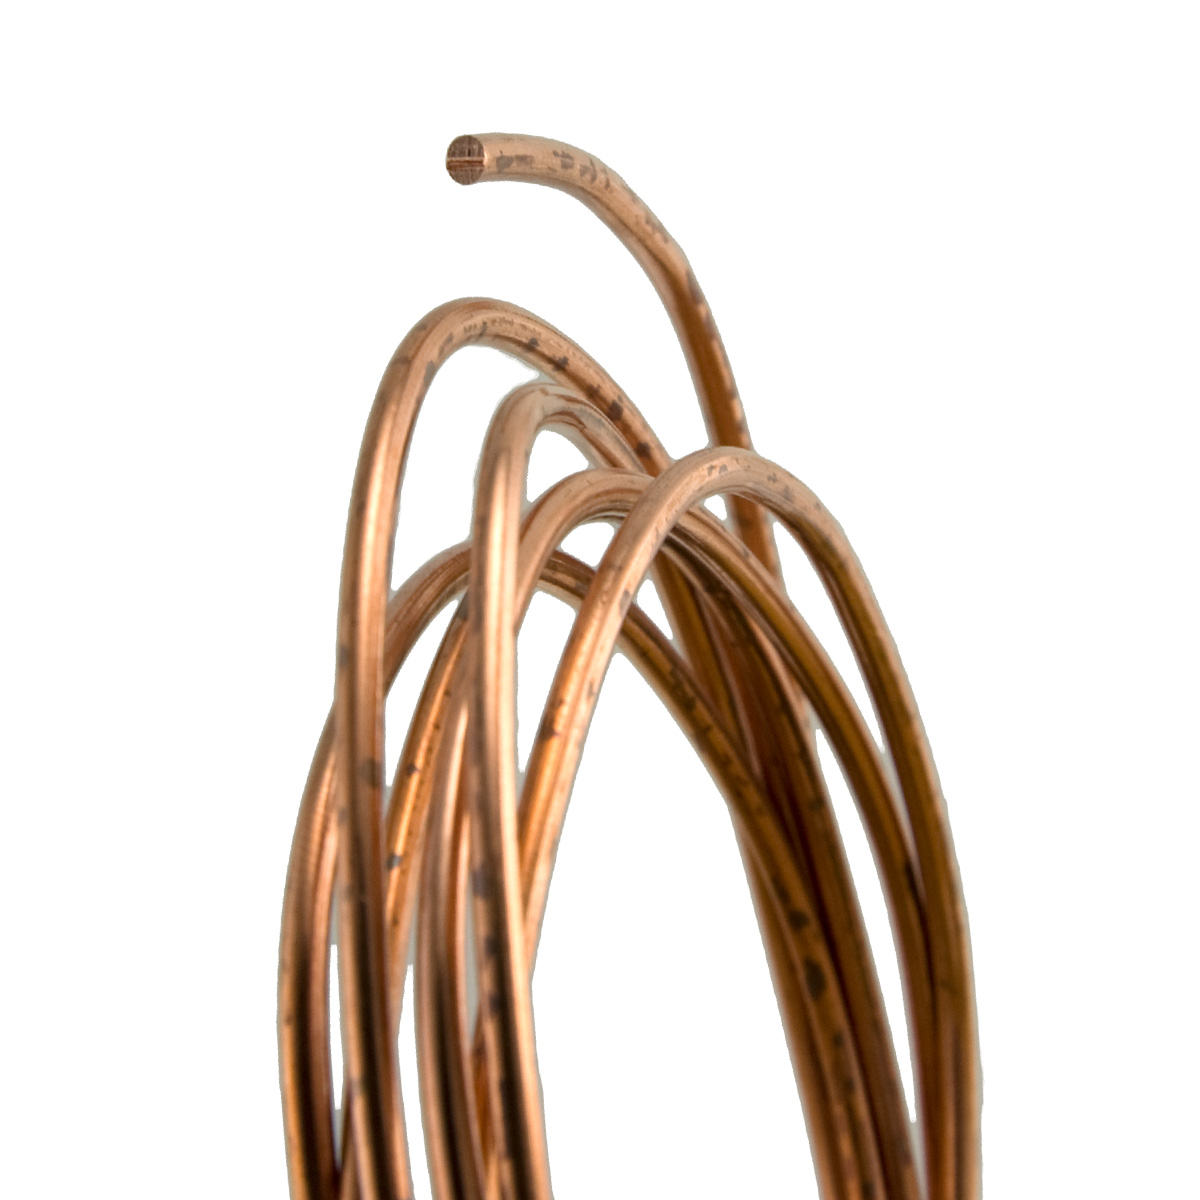 14 Gauge Round Dead Soft Copper Wire: Jewelry Making Supplies